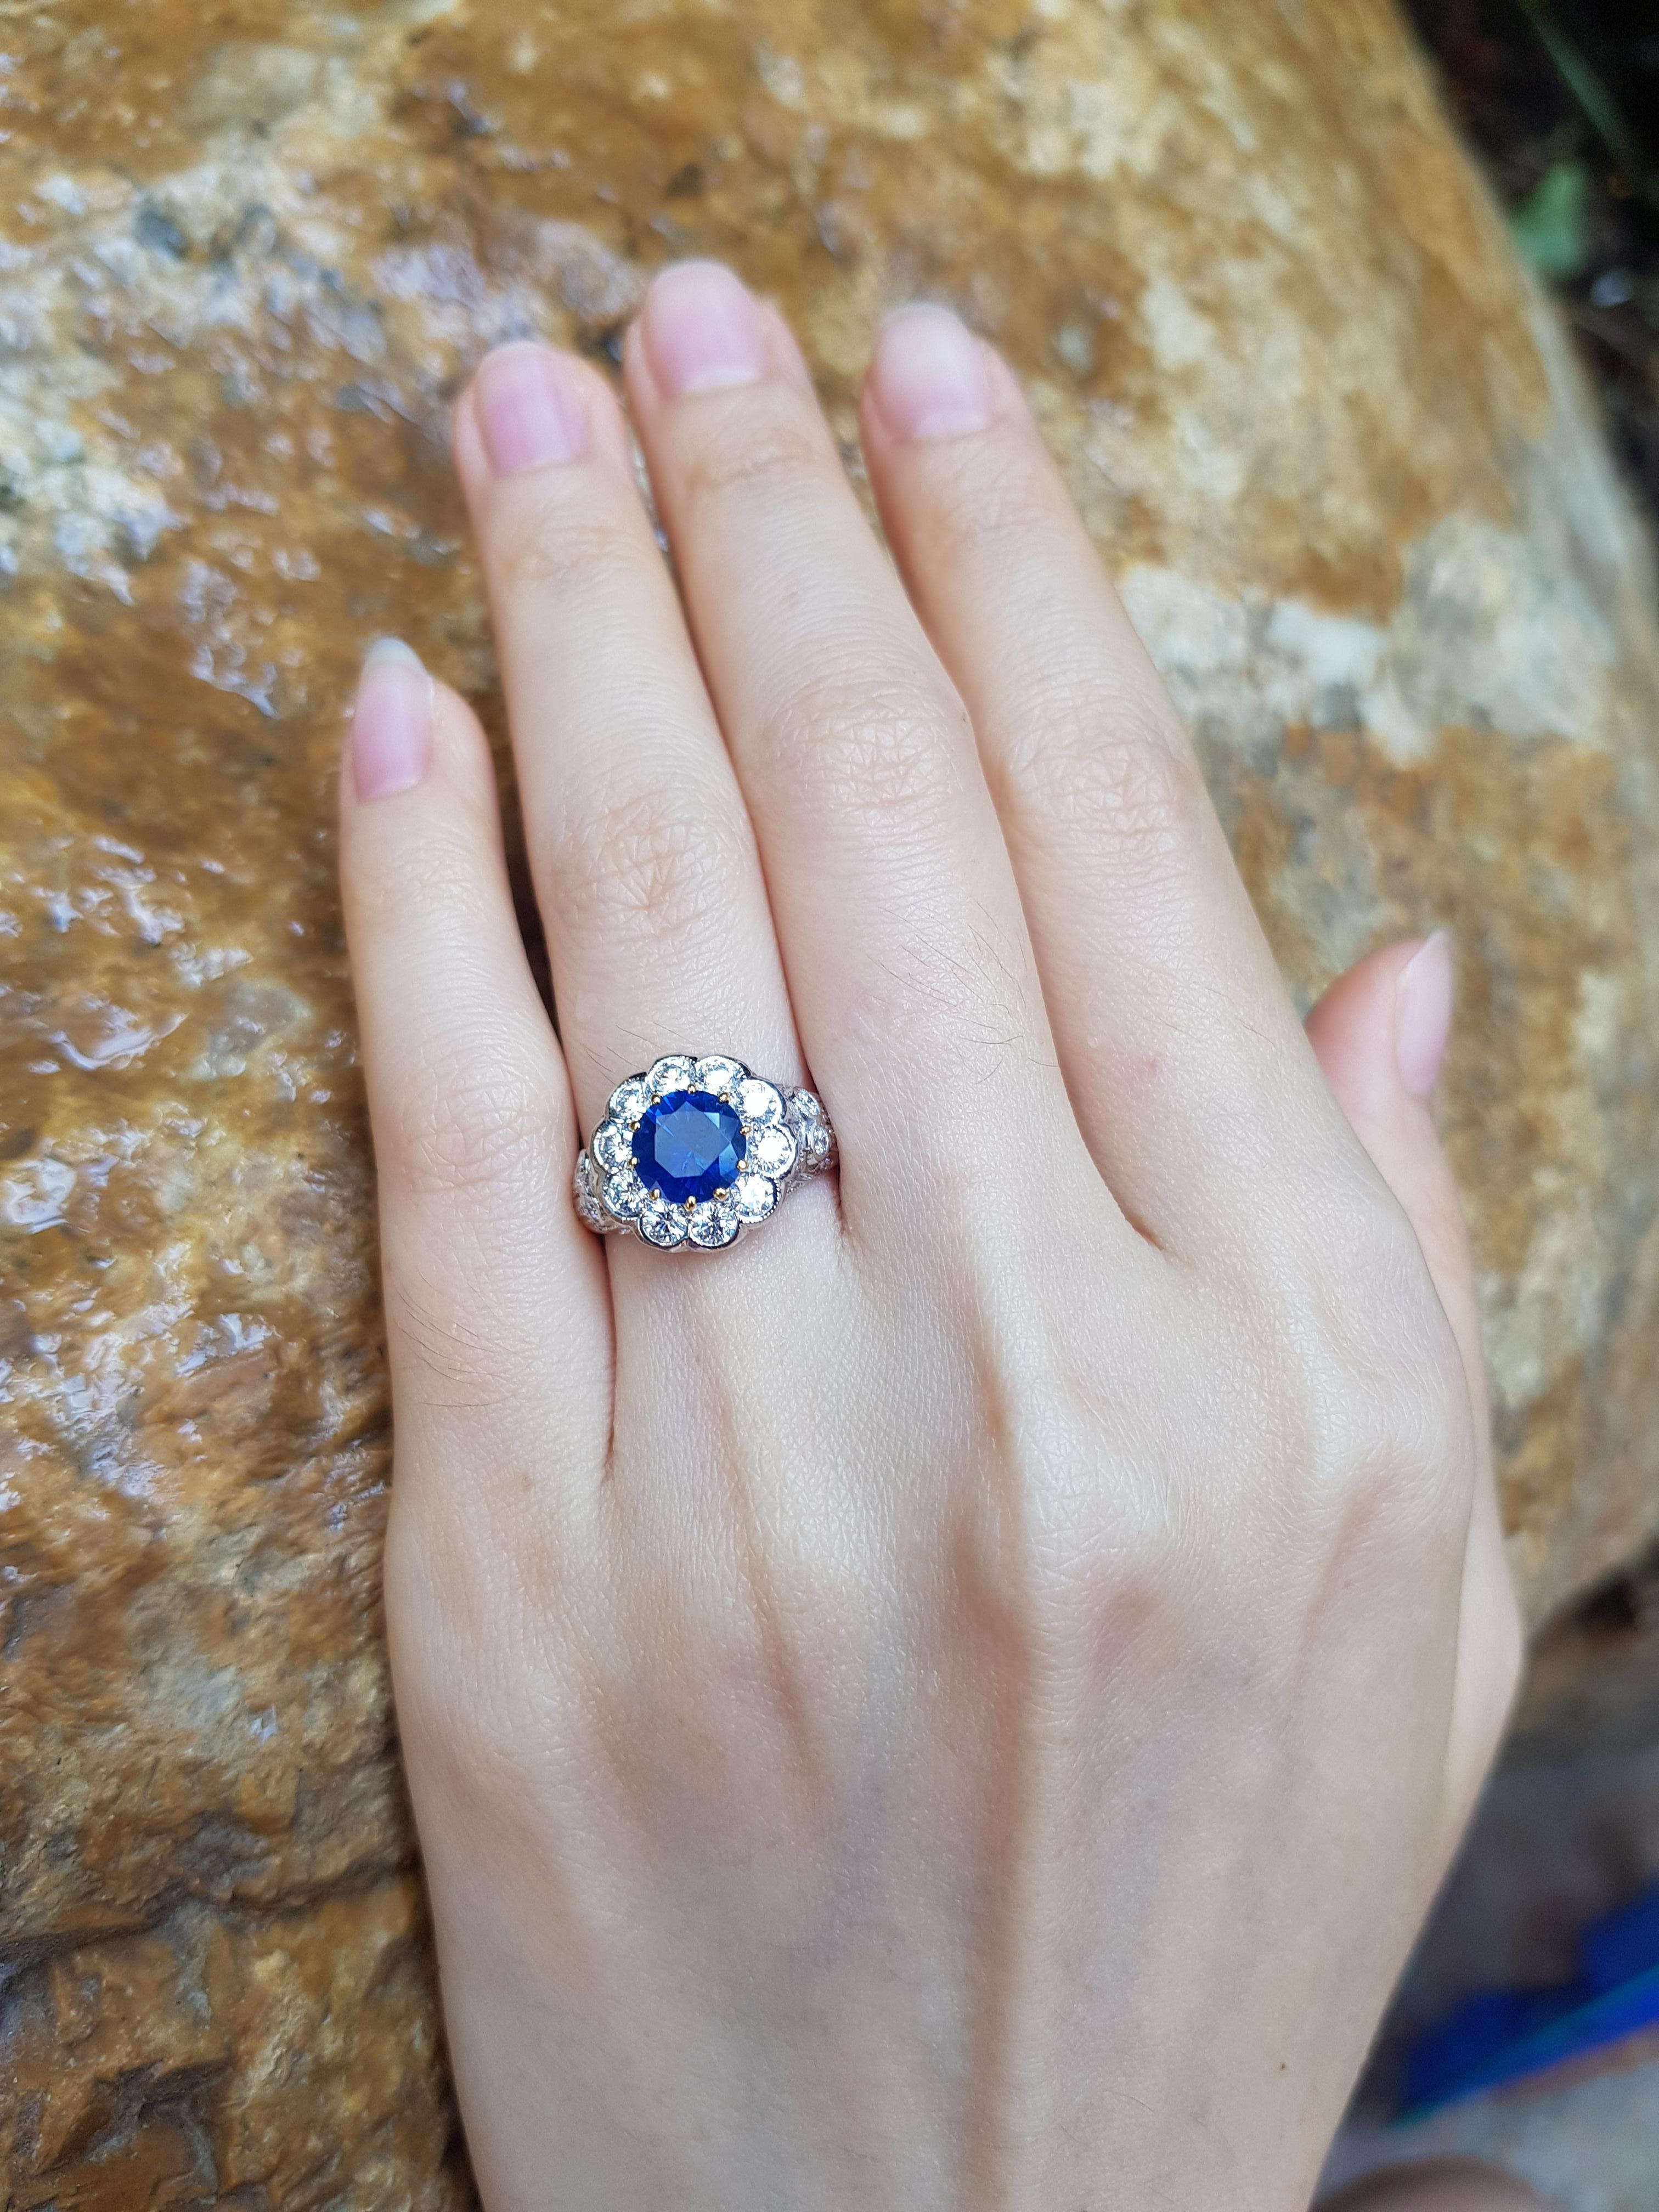 Bague en or 18 carats sertie d'un saphir bleu de 1,44 carat et d'un diamant de 0,87 carat

Largeur : 1,2 cm
Longueur : 1,2 cm 
Taille de l'anneau : 50

